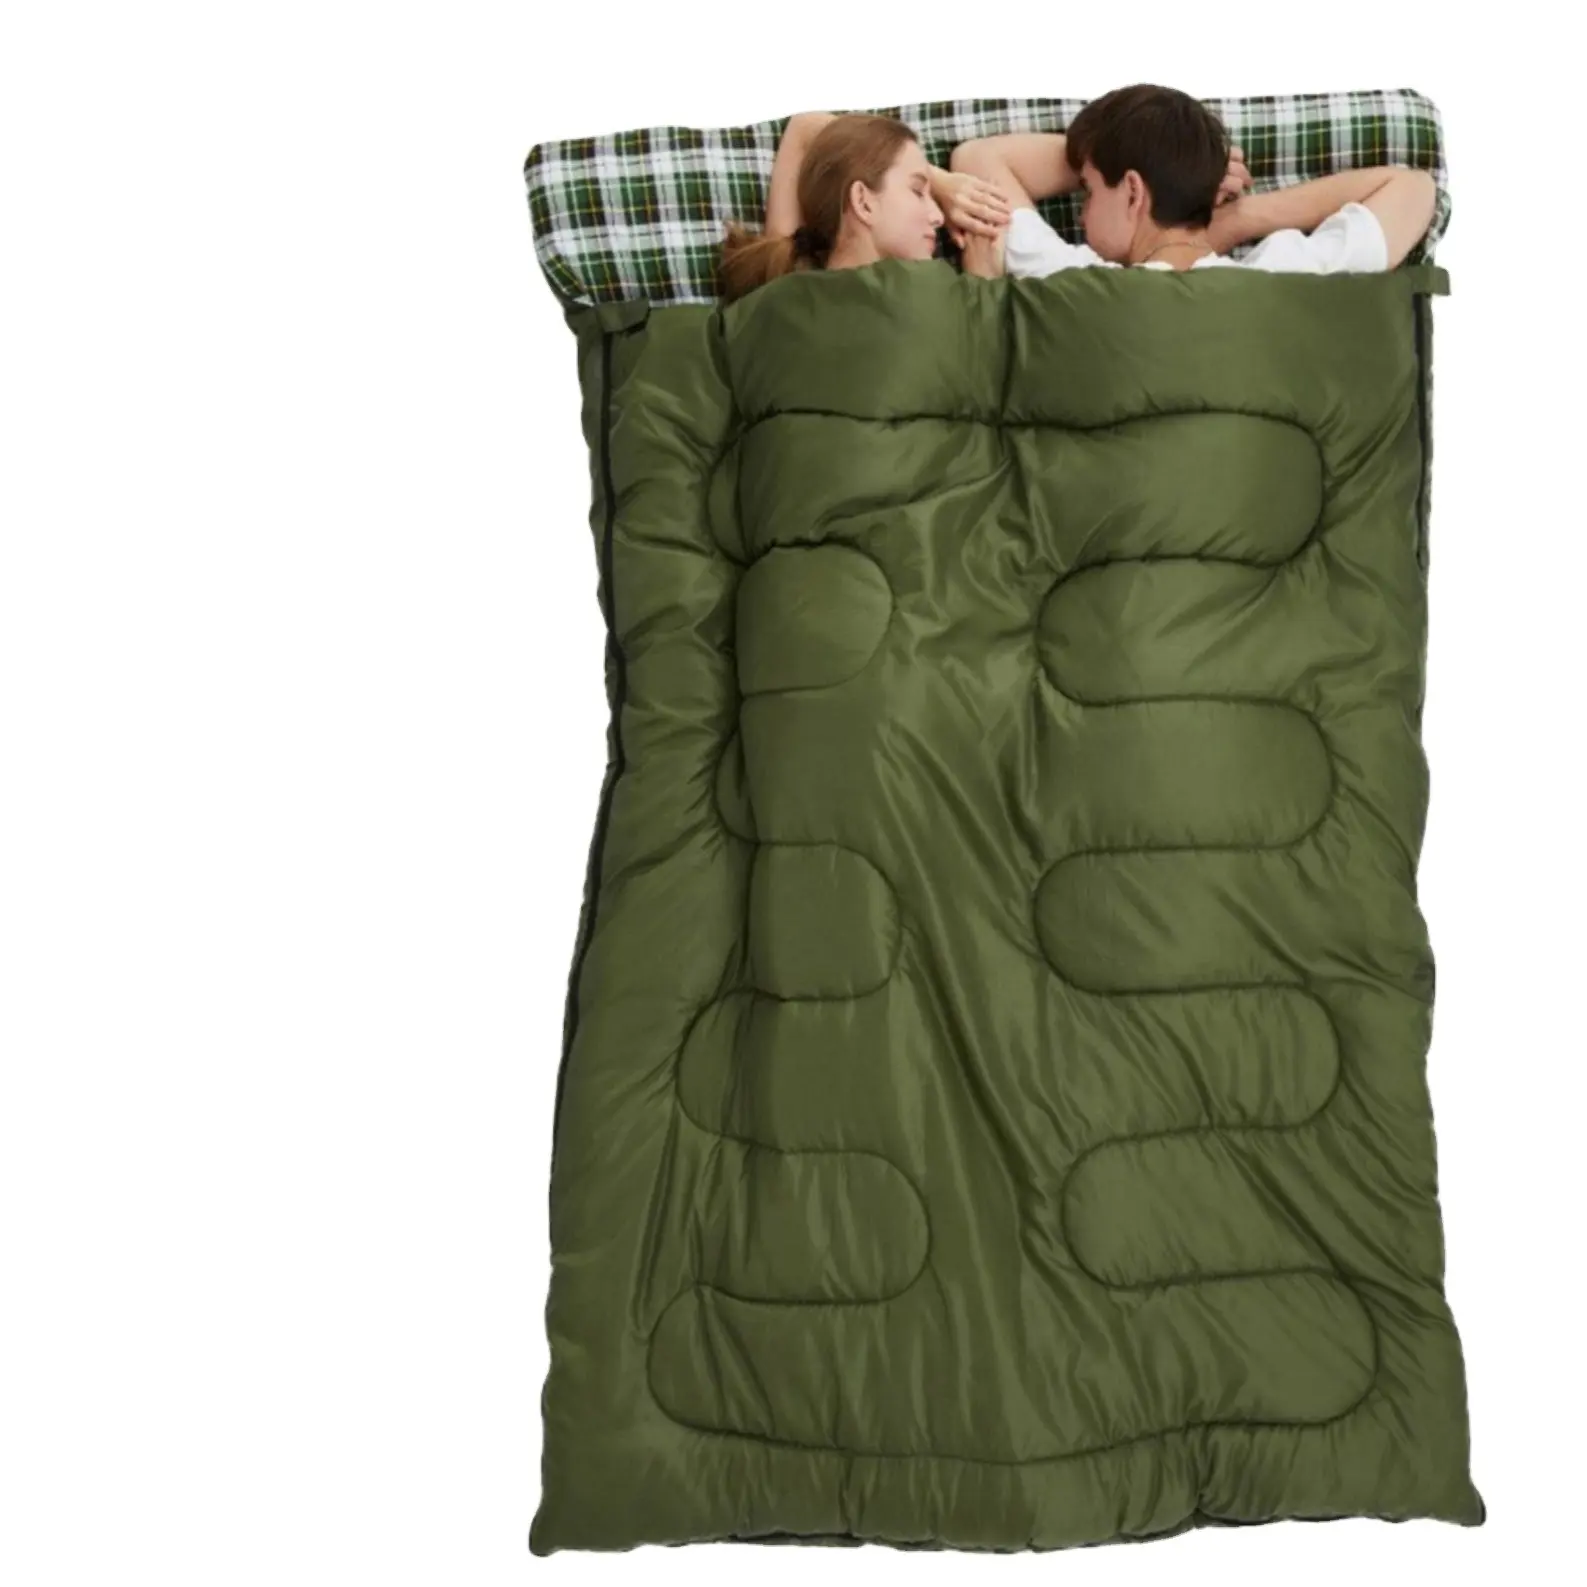 3 인 더블 부모-자식 가족 커플 침낭 스플라이스 가능 야외 방수 휴대용 침낭